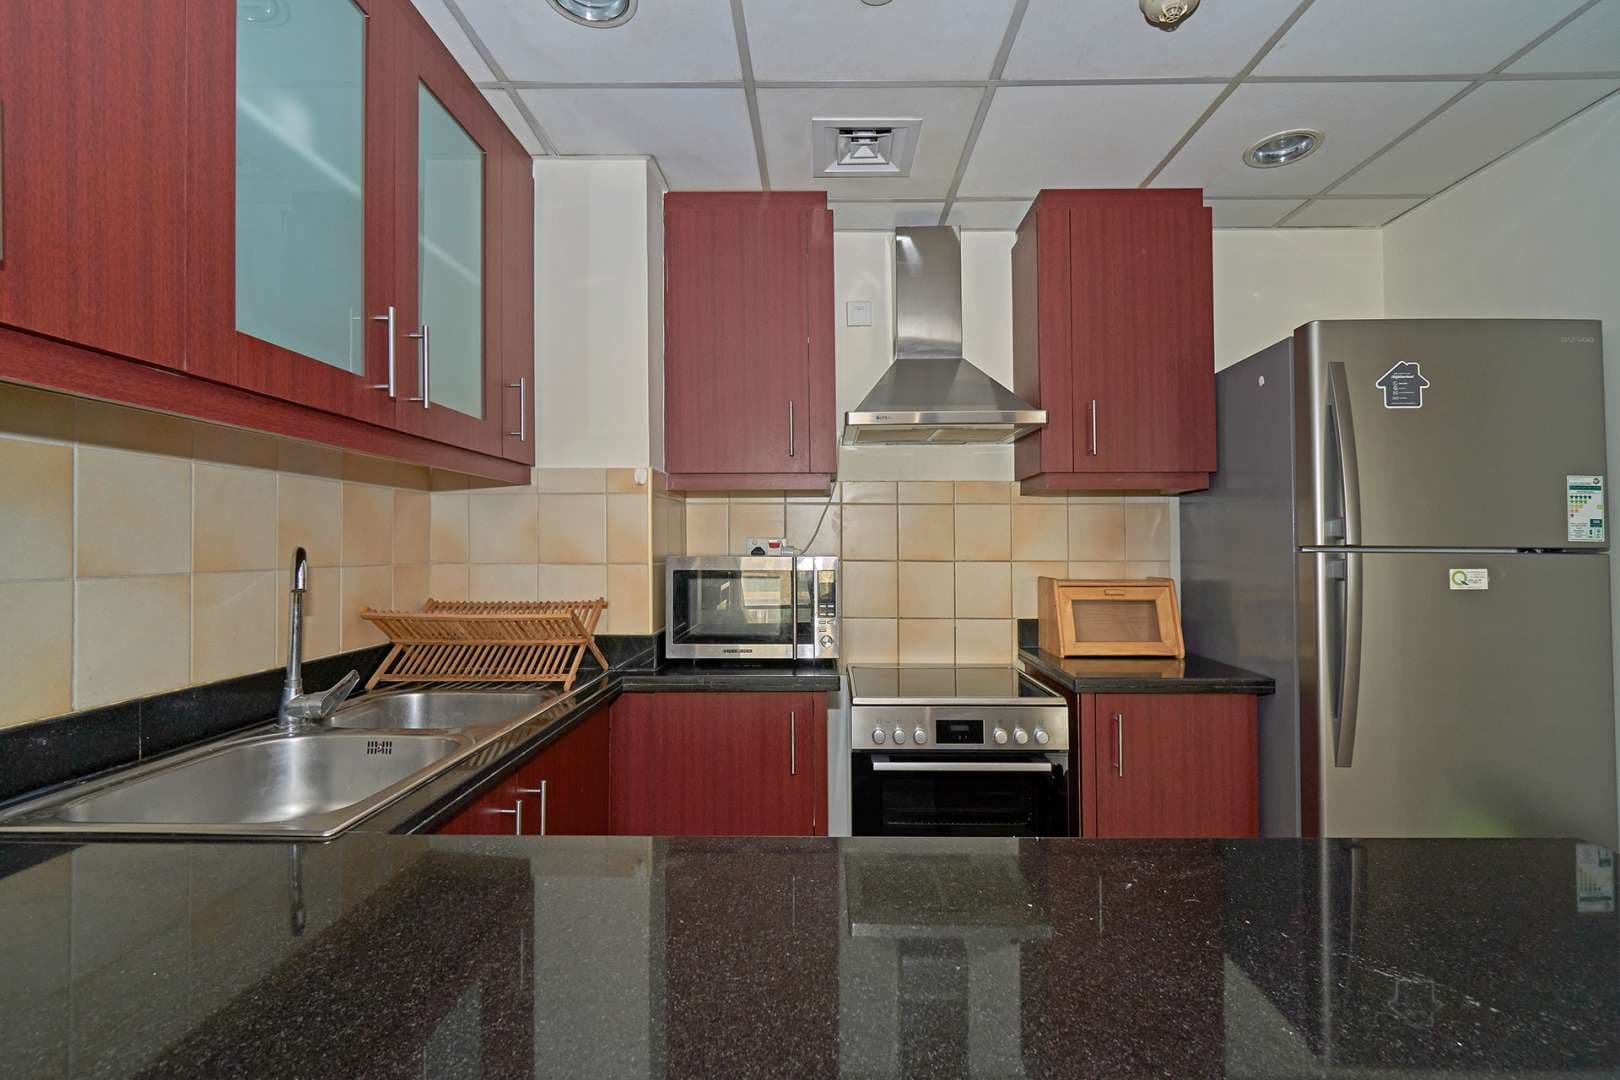 2 Bedroom Apartment For Rent Rimal 1 Lp05987 2a68707a52fd1400.jpg